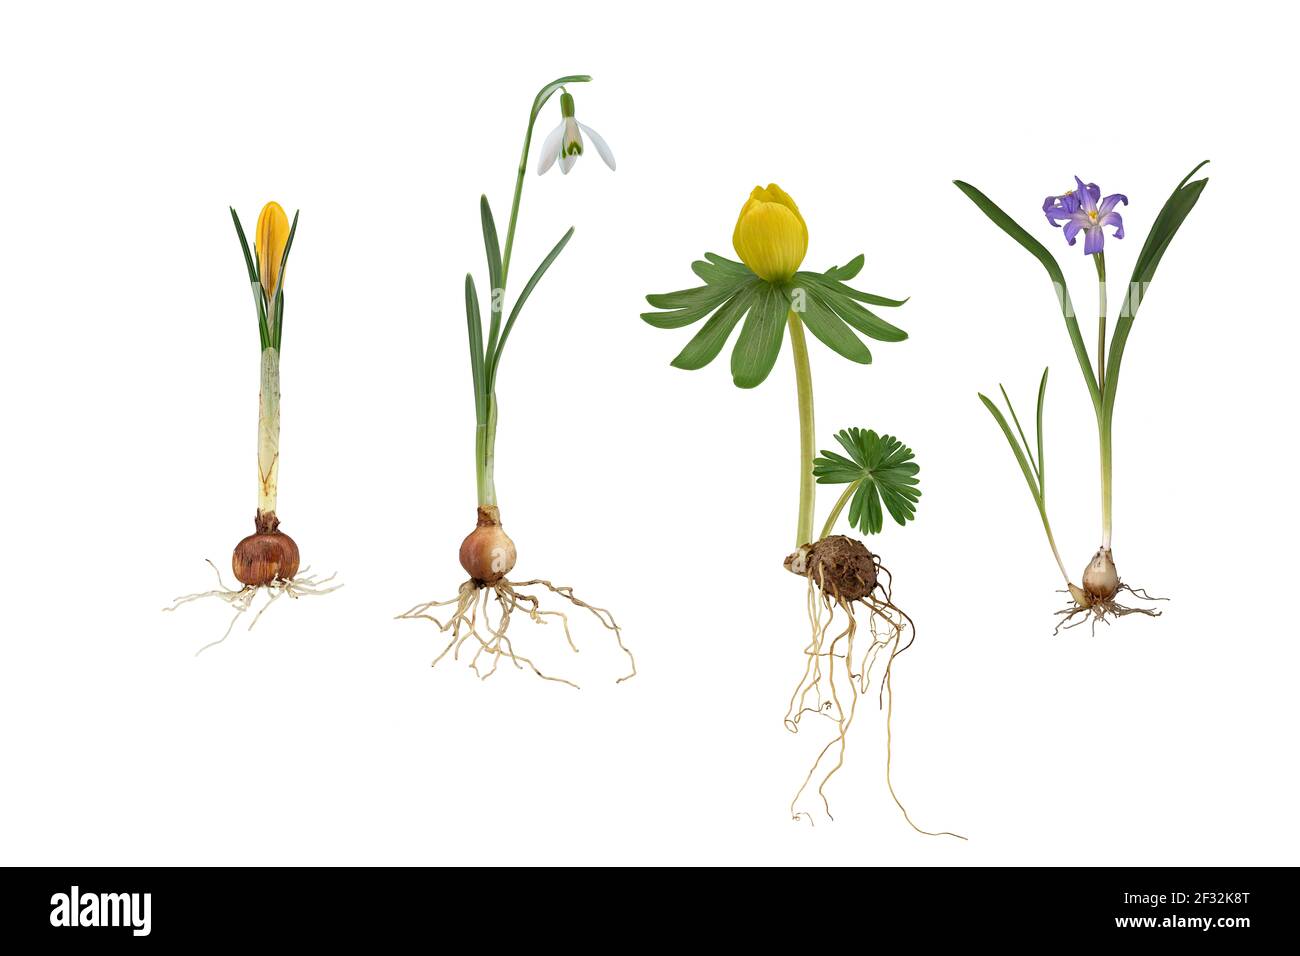 Piante in fiore: Crocus (Crocus chrysanthus), Snowdrop (Galanthus), Aconite invernale (Eranthis hyemalis), giacinto stellare comune (Chionodoxa Foto Stock